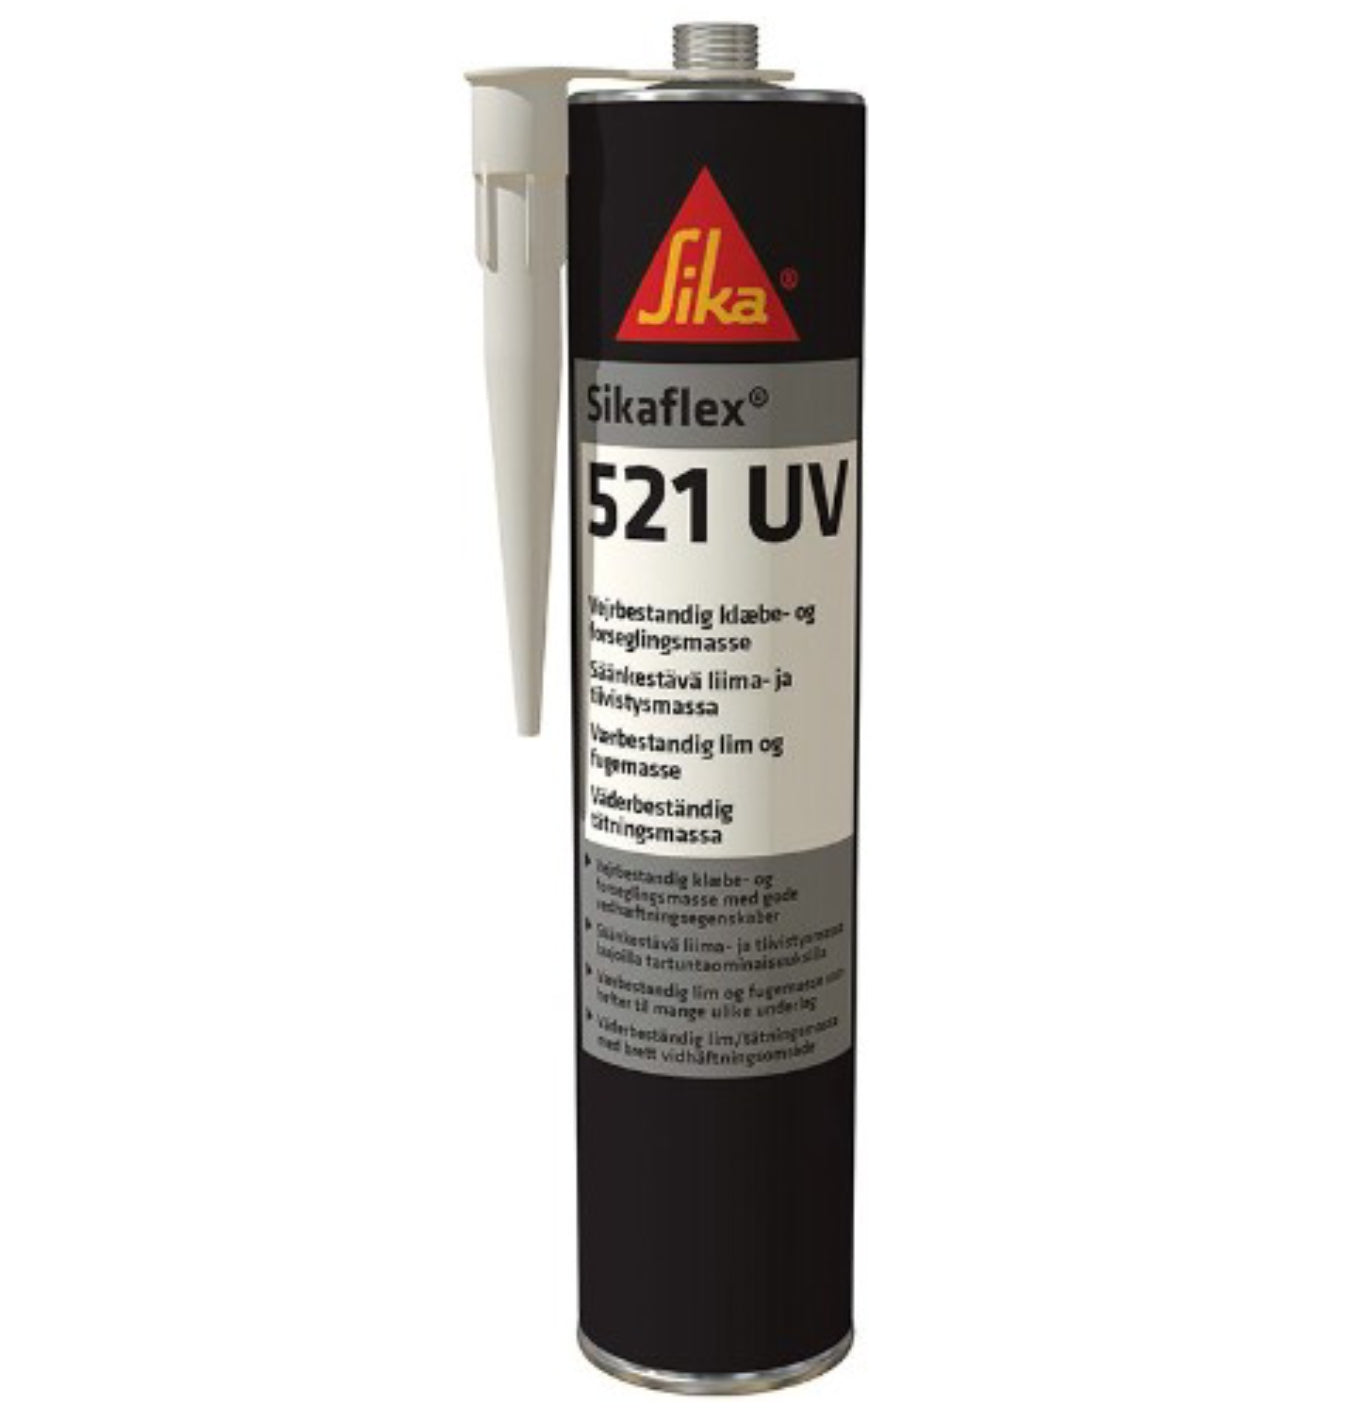 Sikaflex 521 UV White Weathering-Resistant Adhesive Sealant | 300ml Image